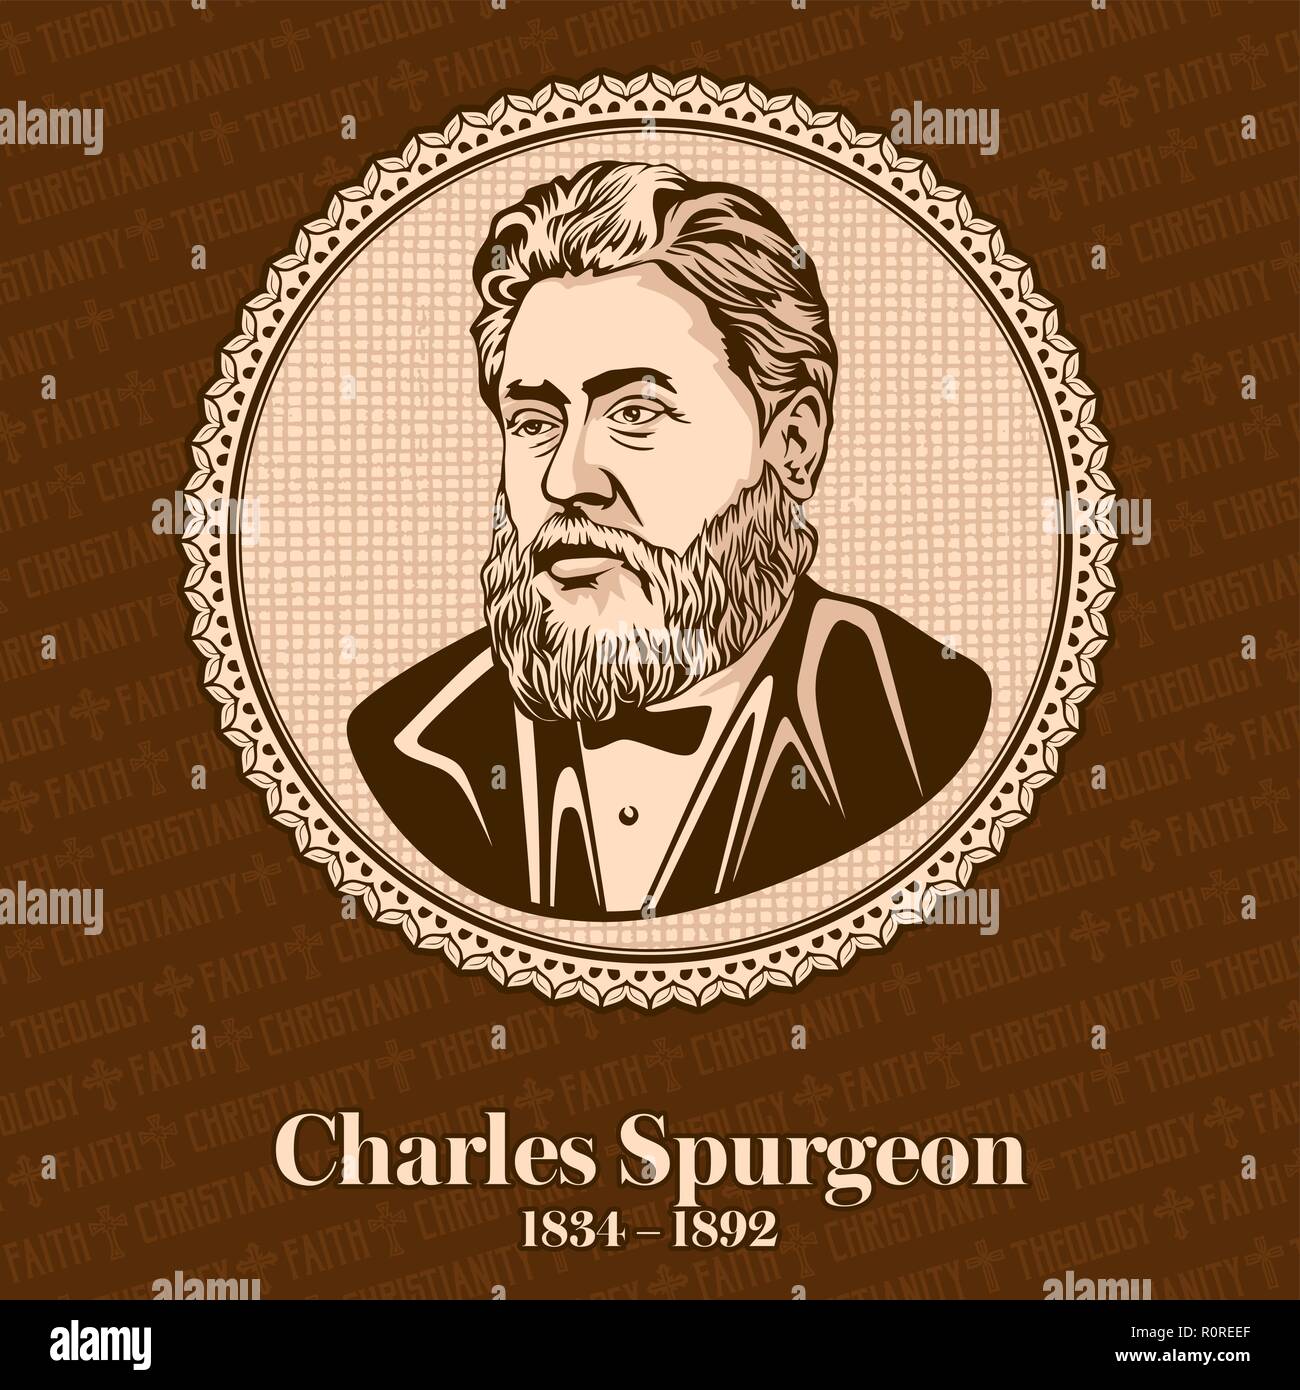 Charles Haddon Spurgeon (1834 - 1892) était un prédicateur baptiste particulier. Spurgeon demeure très influente parmi les chrétiens de diverses deno Illustration de Vecteur